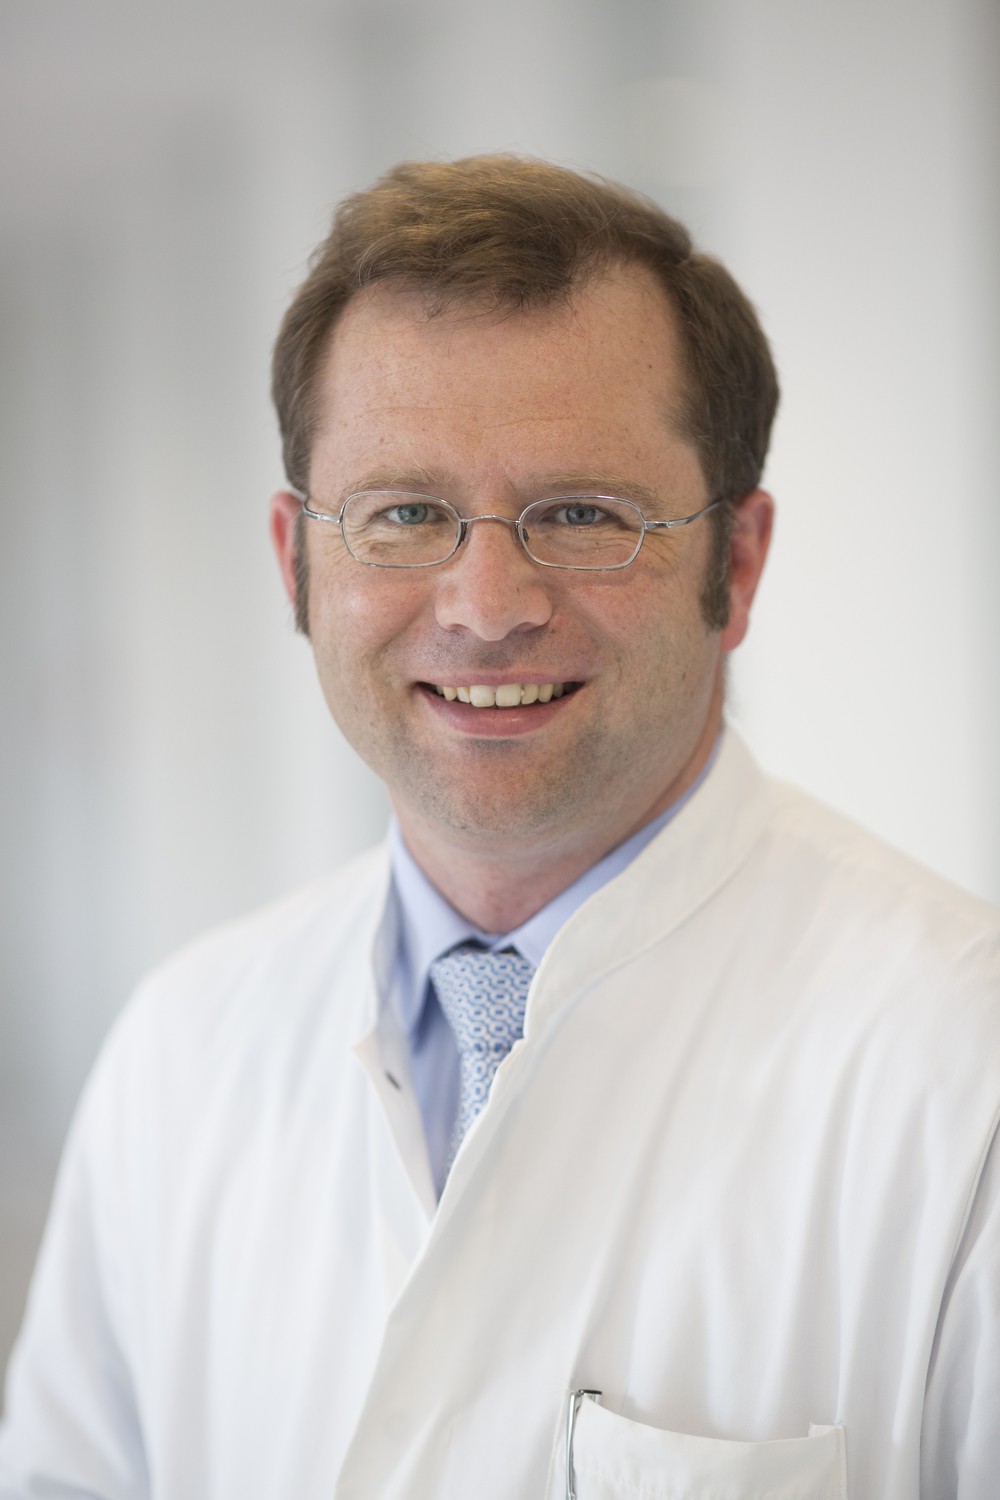 Studienleiter Prof. Rolf Wachter kam 2017 vom Uniklinikum Göttingen ans UKL. Der Kardiologe plant bereits eine größere Folgestudie.